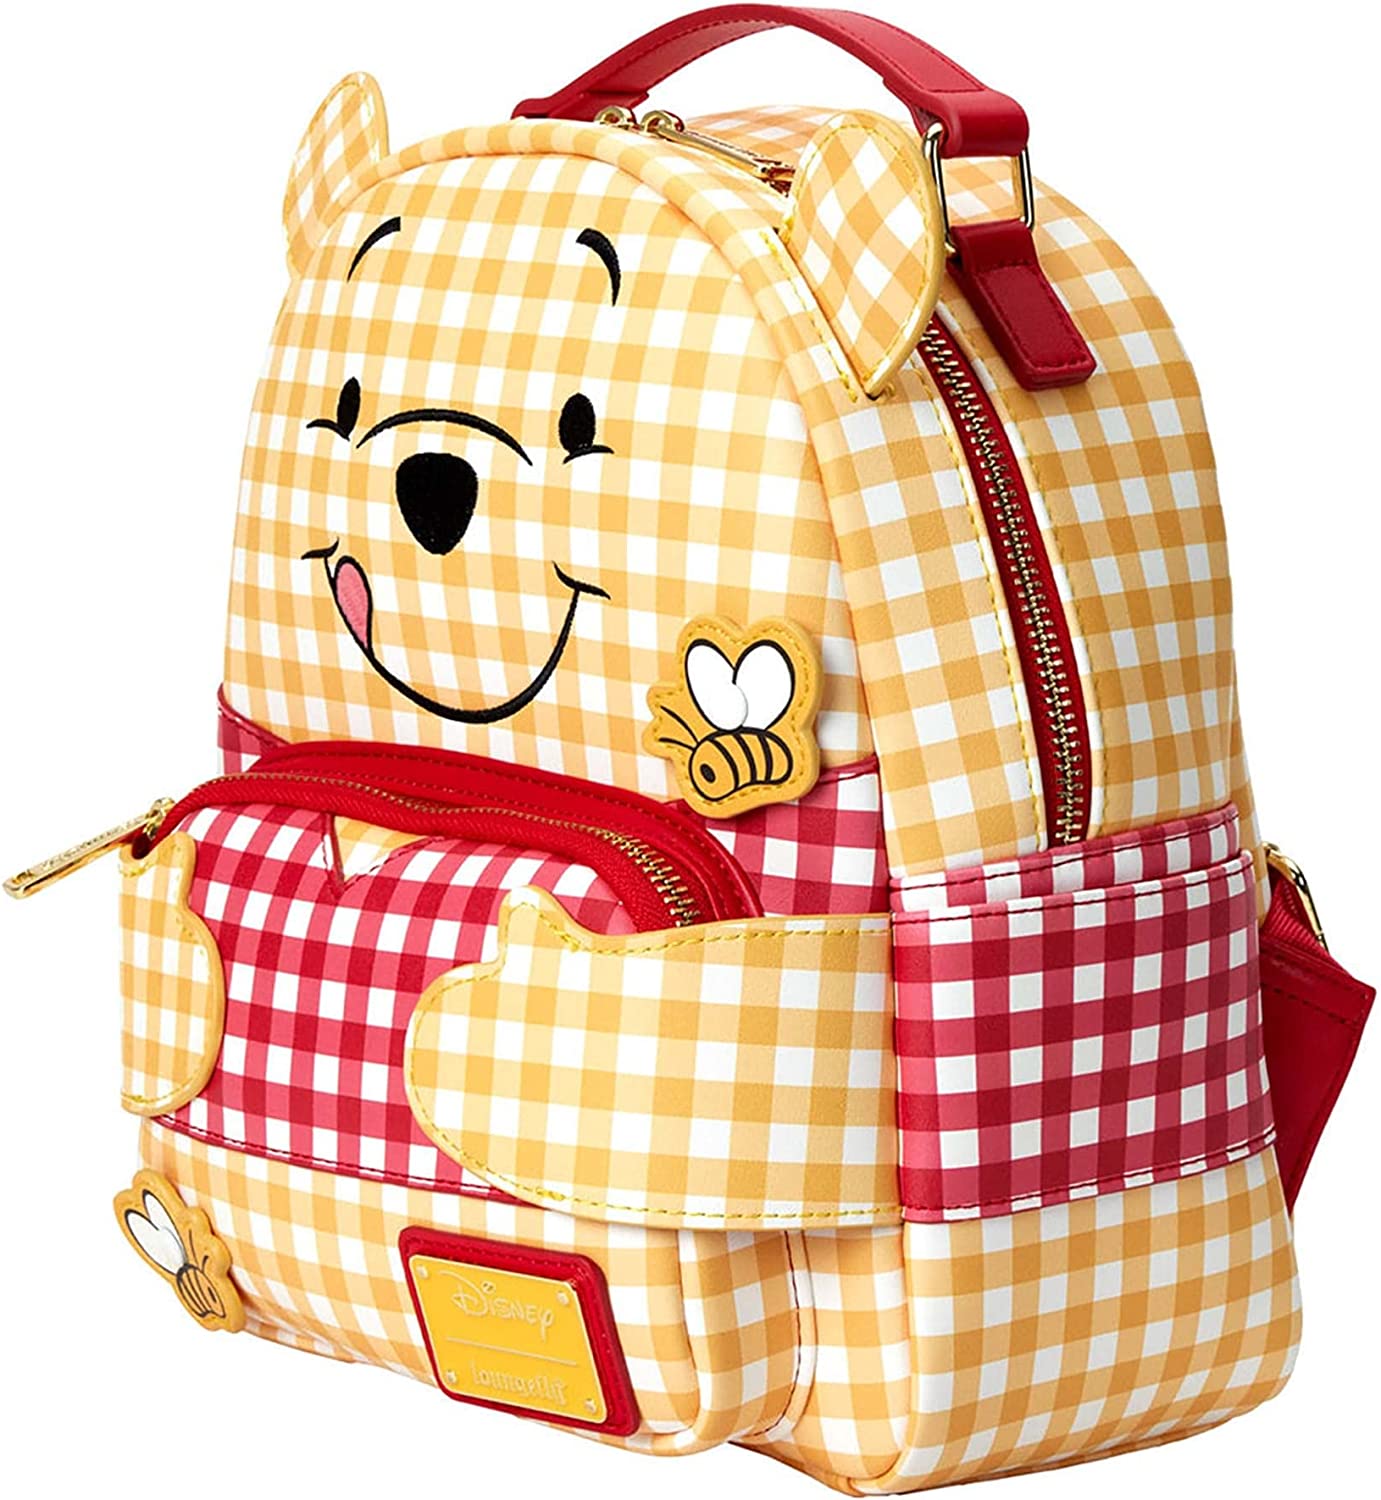 Loungefly Disney Winnie the Pooh Gingham Mini Backpack